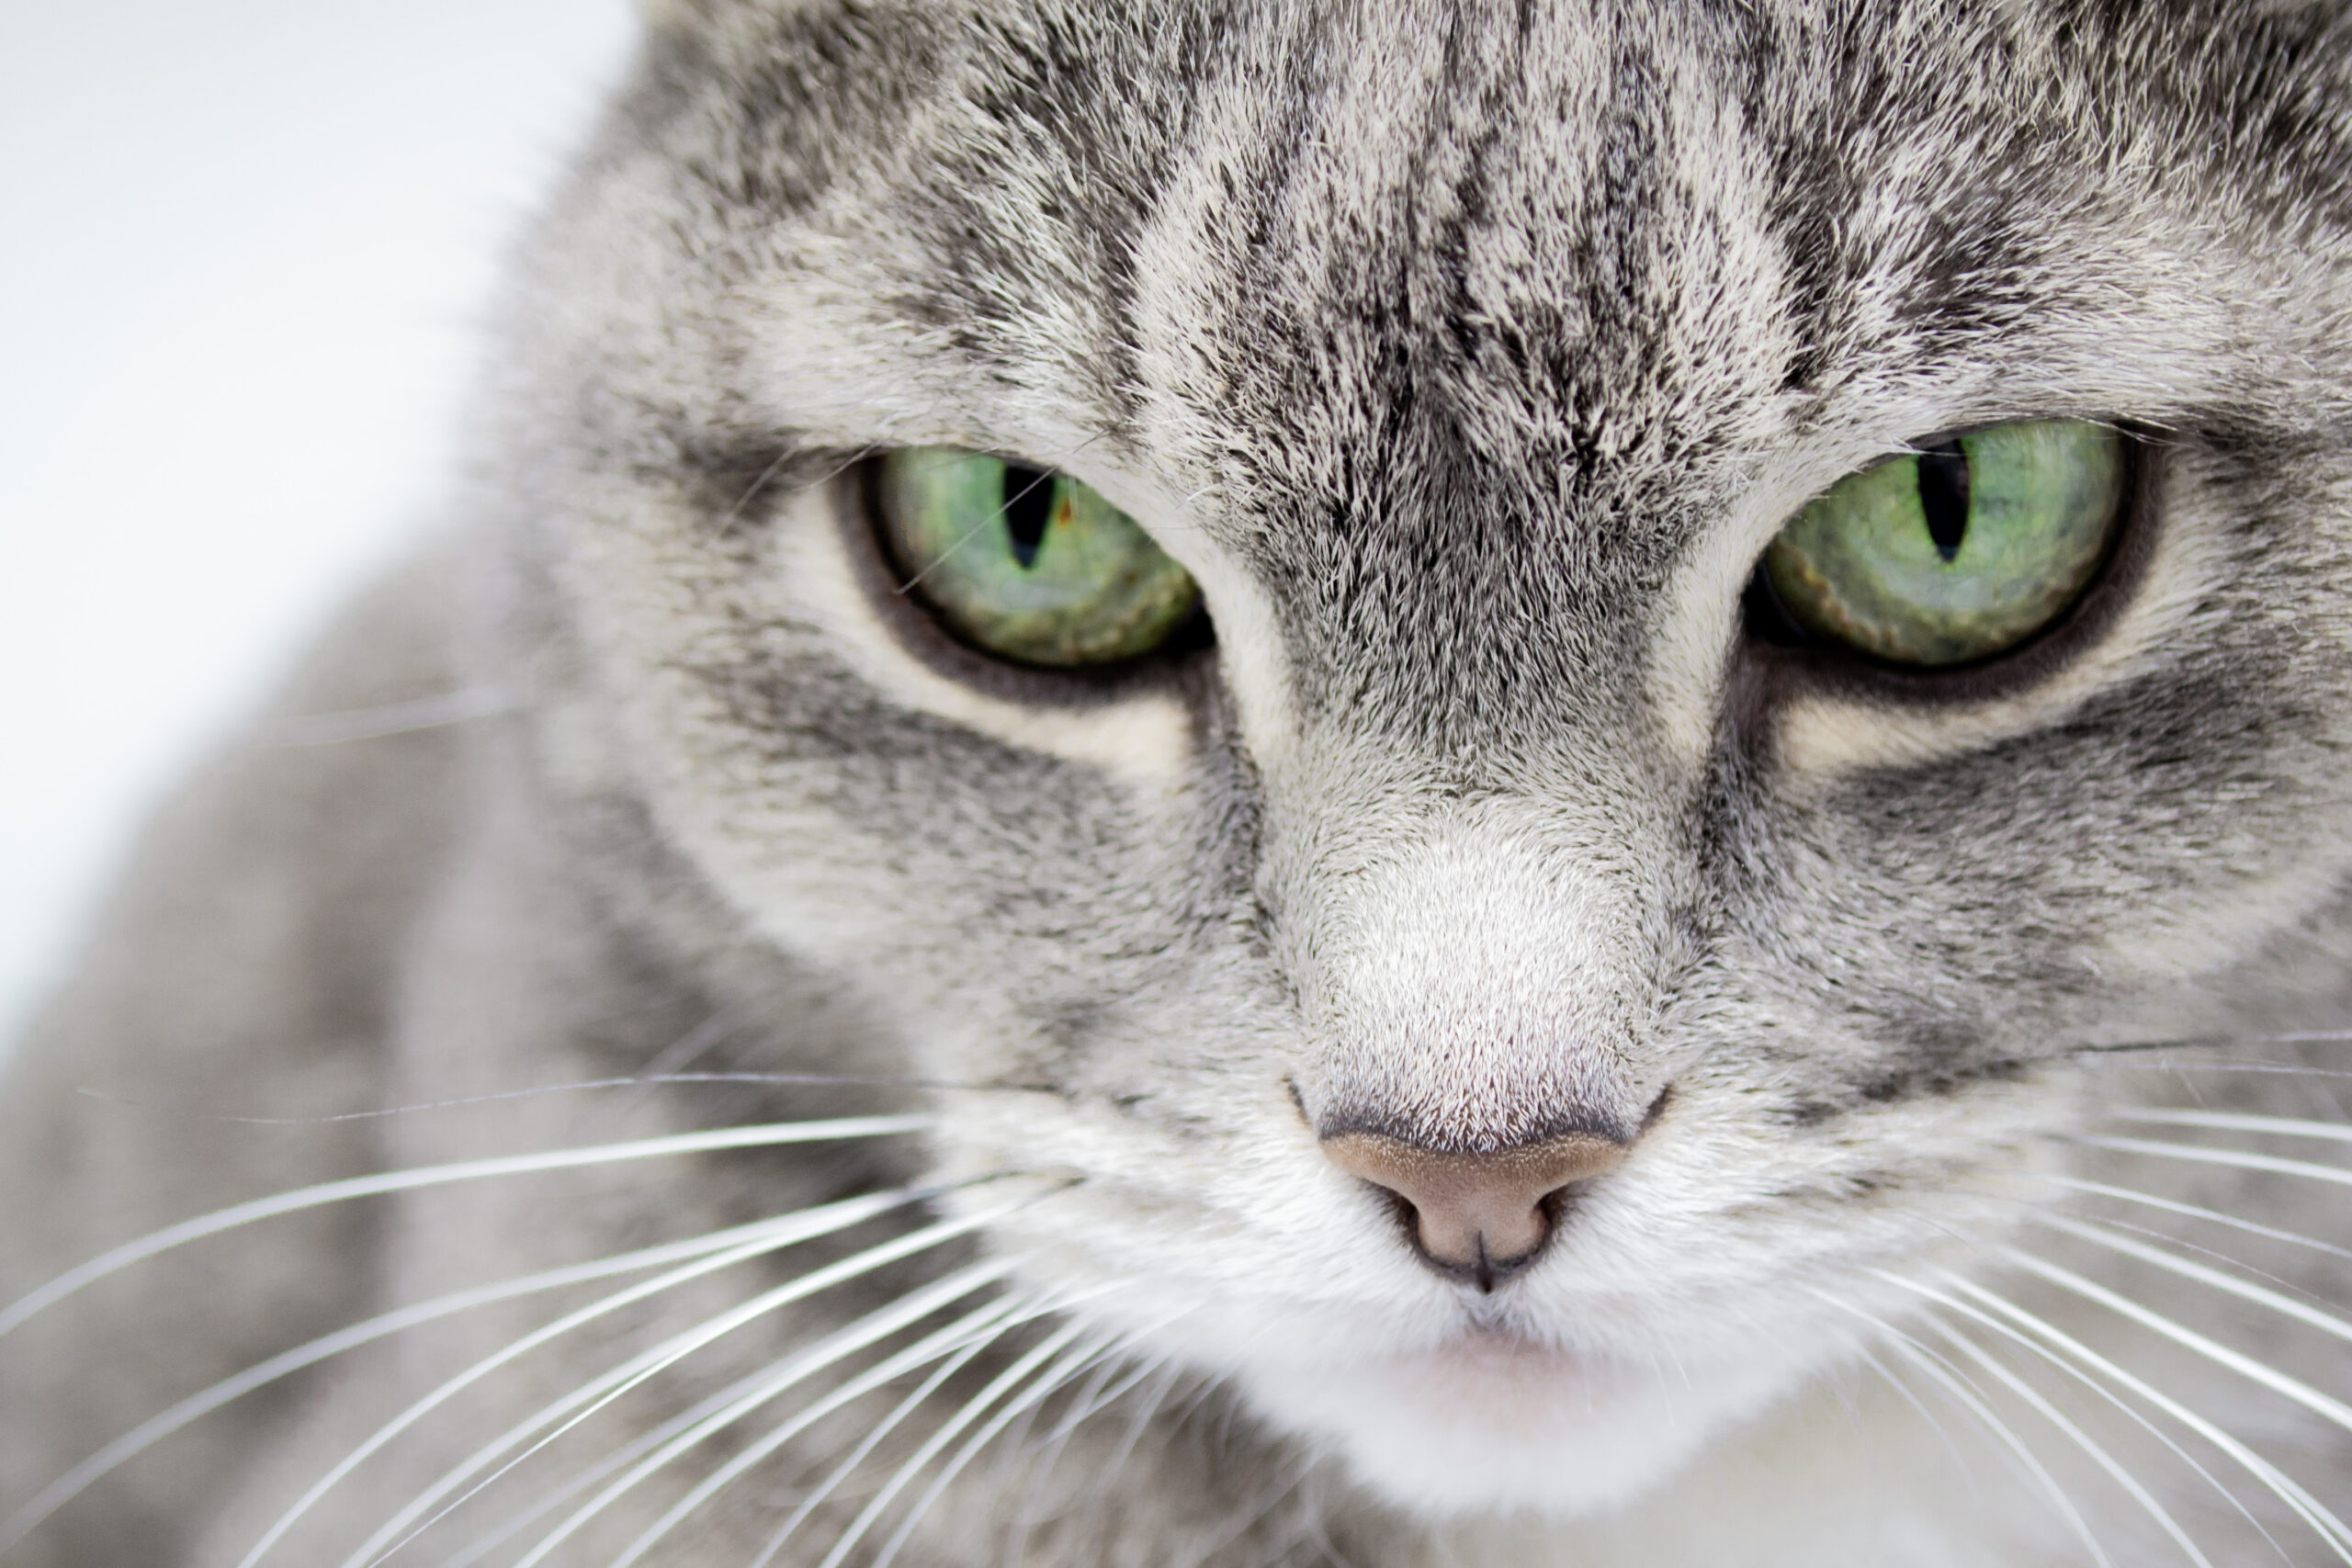 Mitos ou verdade: gatos não veem cores e enxergam tudo em preto e branco? 